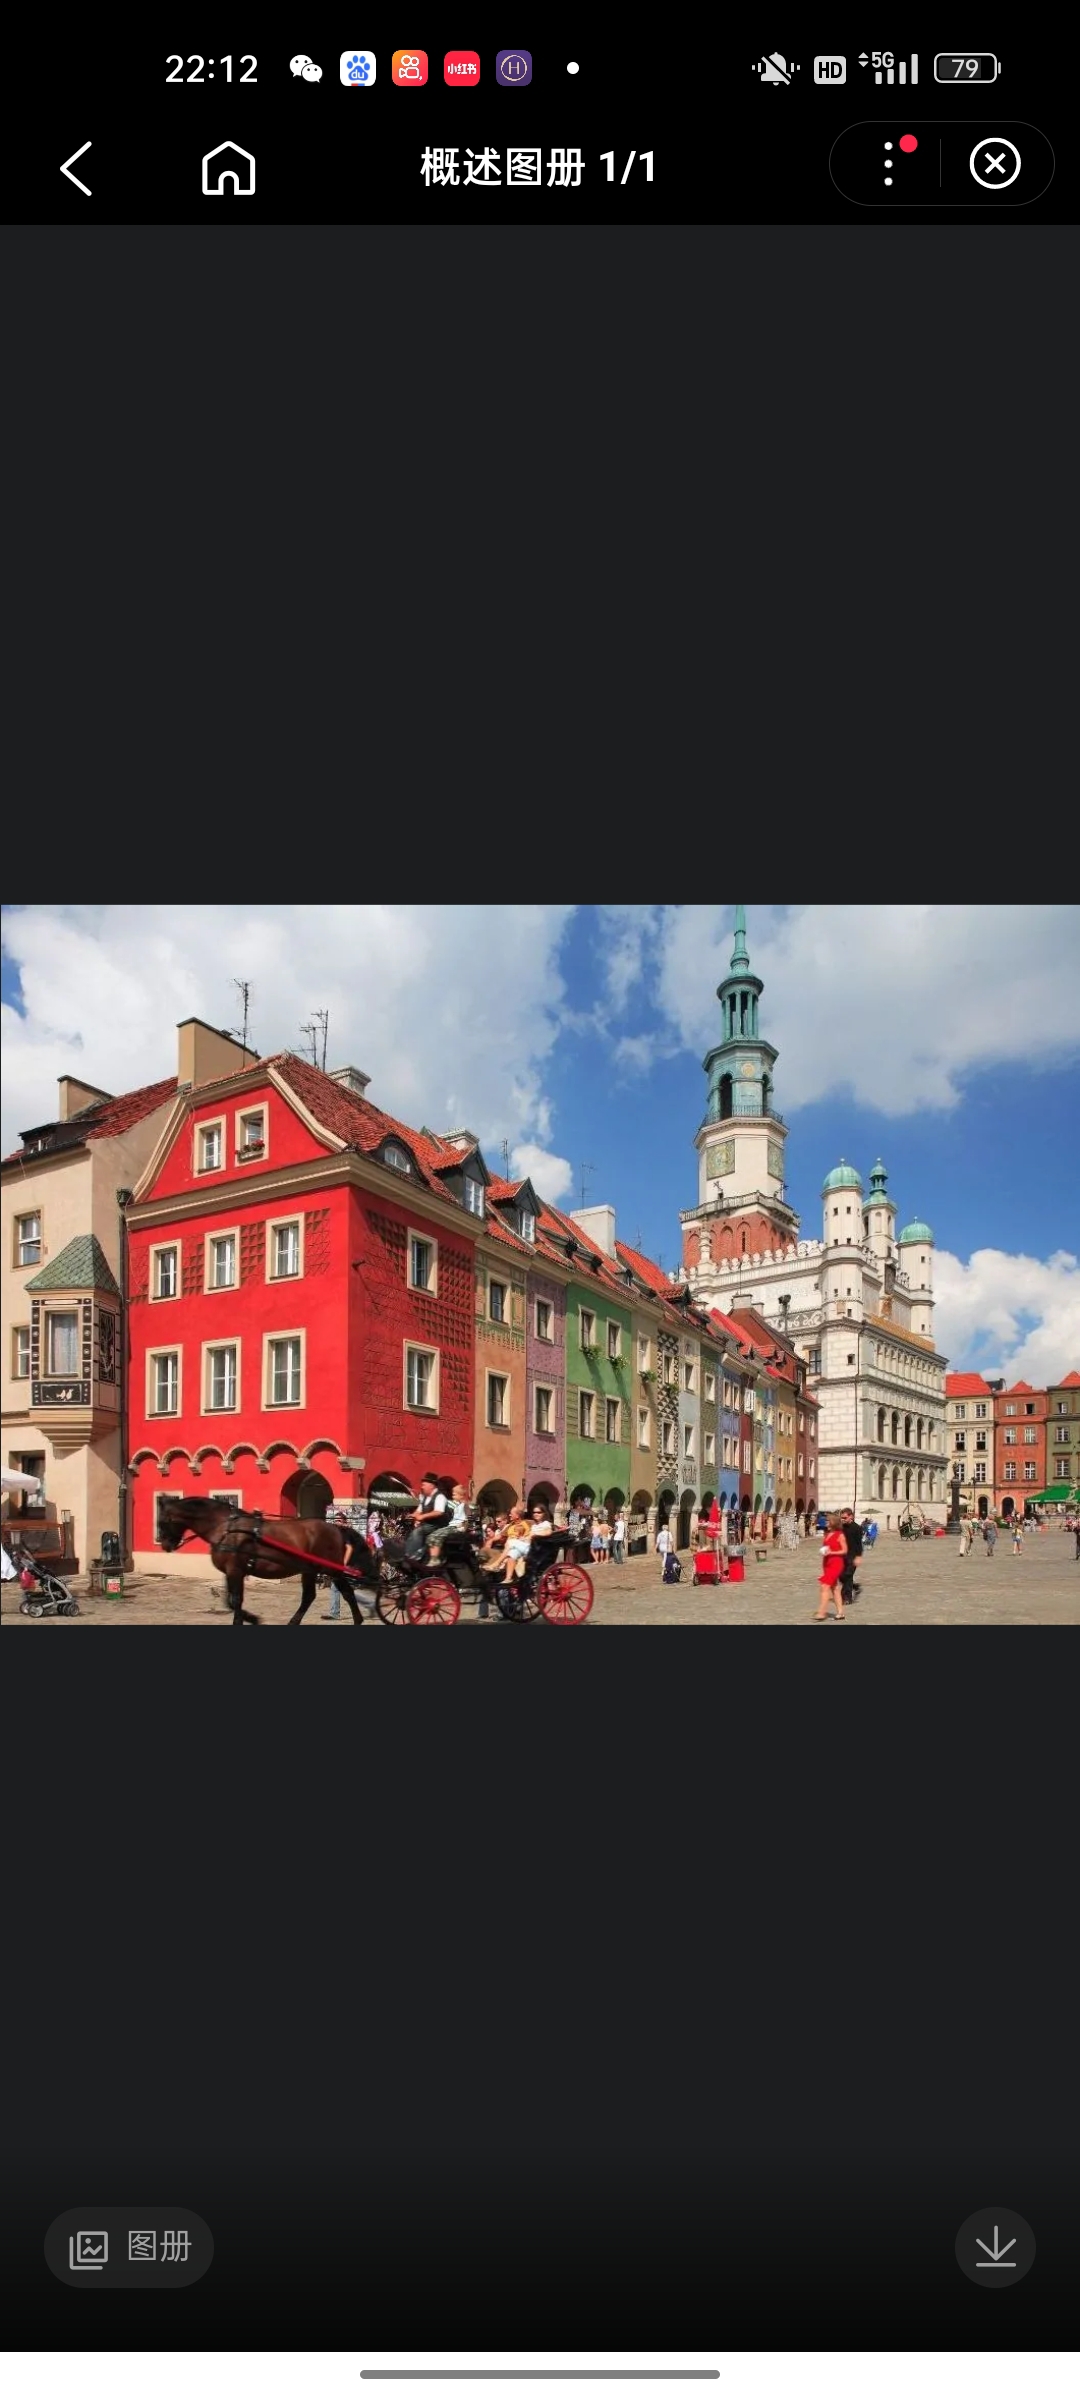 波兹南，波兰中西部城市，大波兰省首府，临瓦尔塔河，居大波兰平原的中心，是波兰最大的工业、交通、文教和